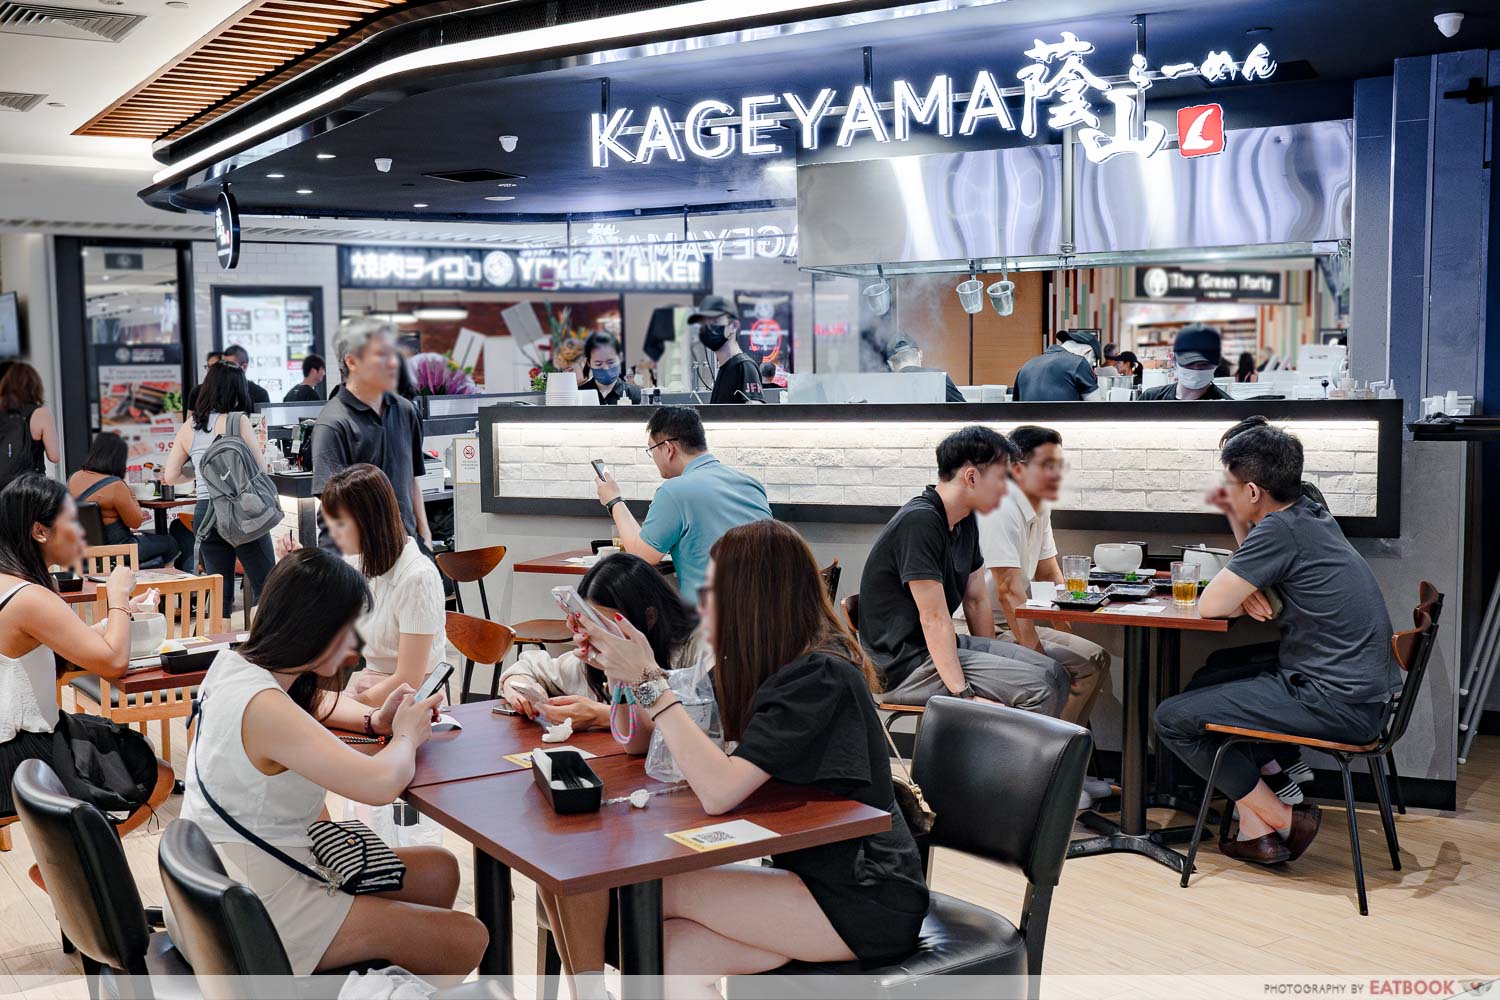 kageyama-storefront